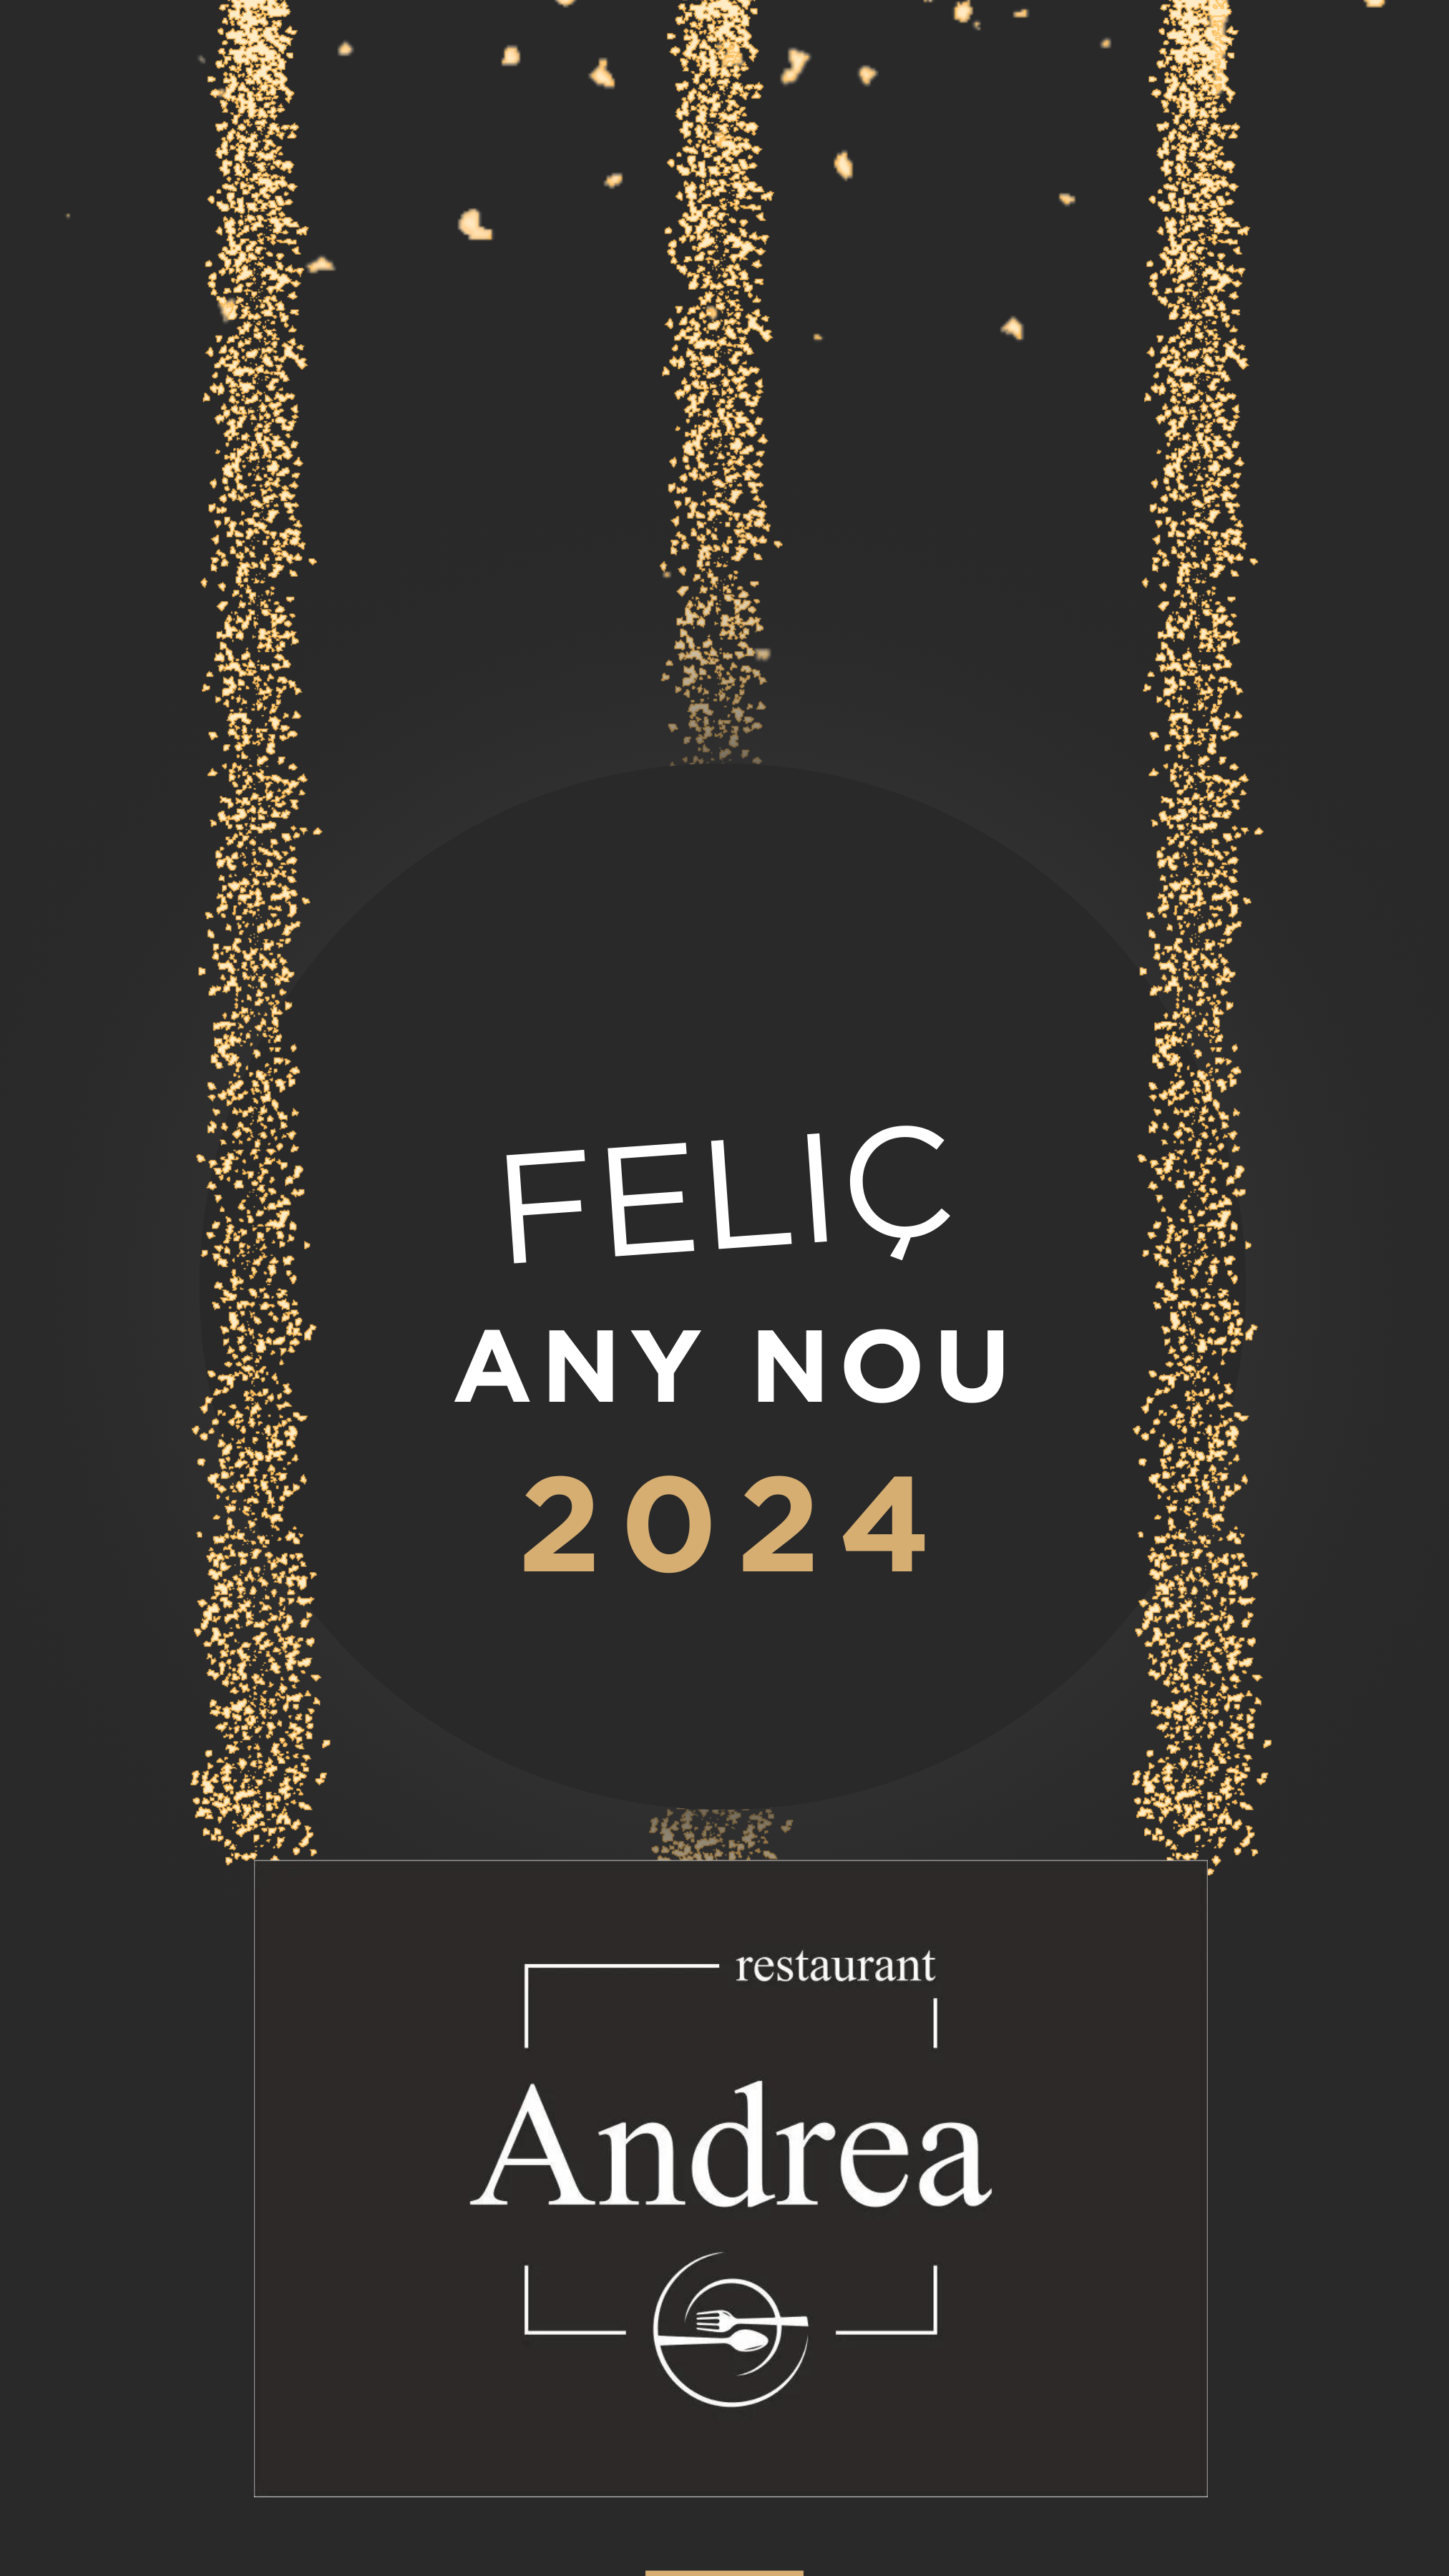 Feliç any nou 2024 | Feliz año nuevo 2024